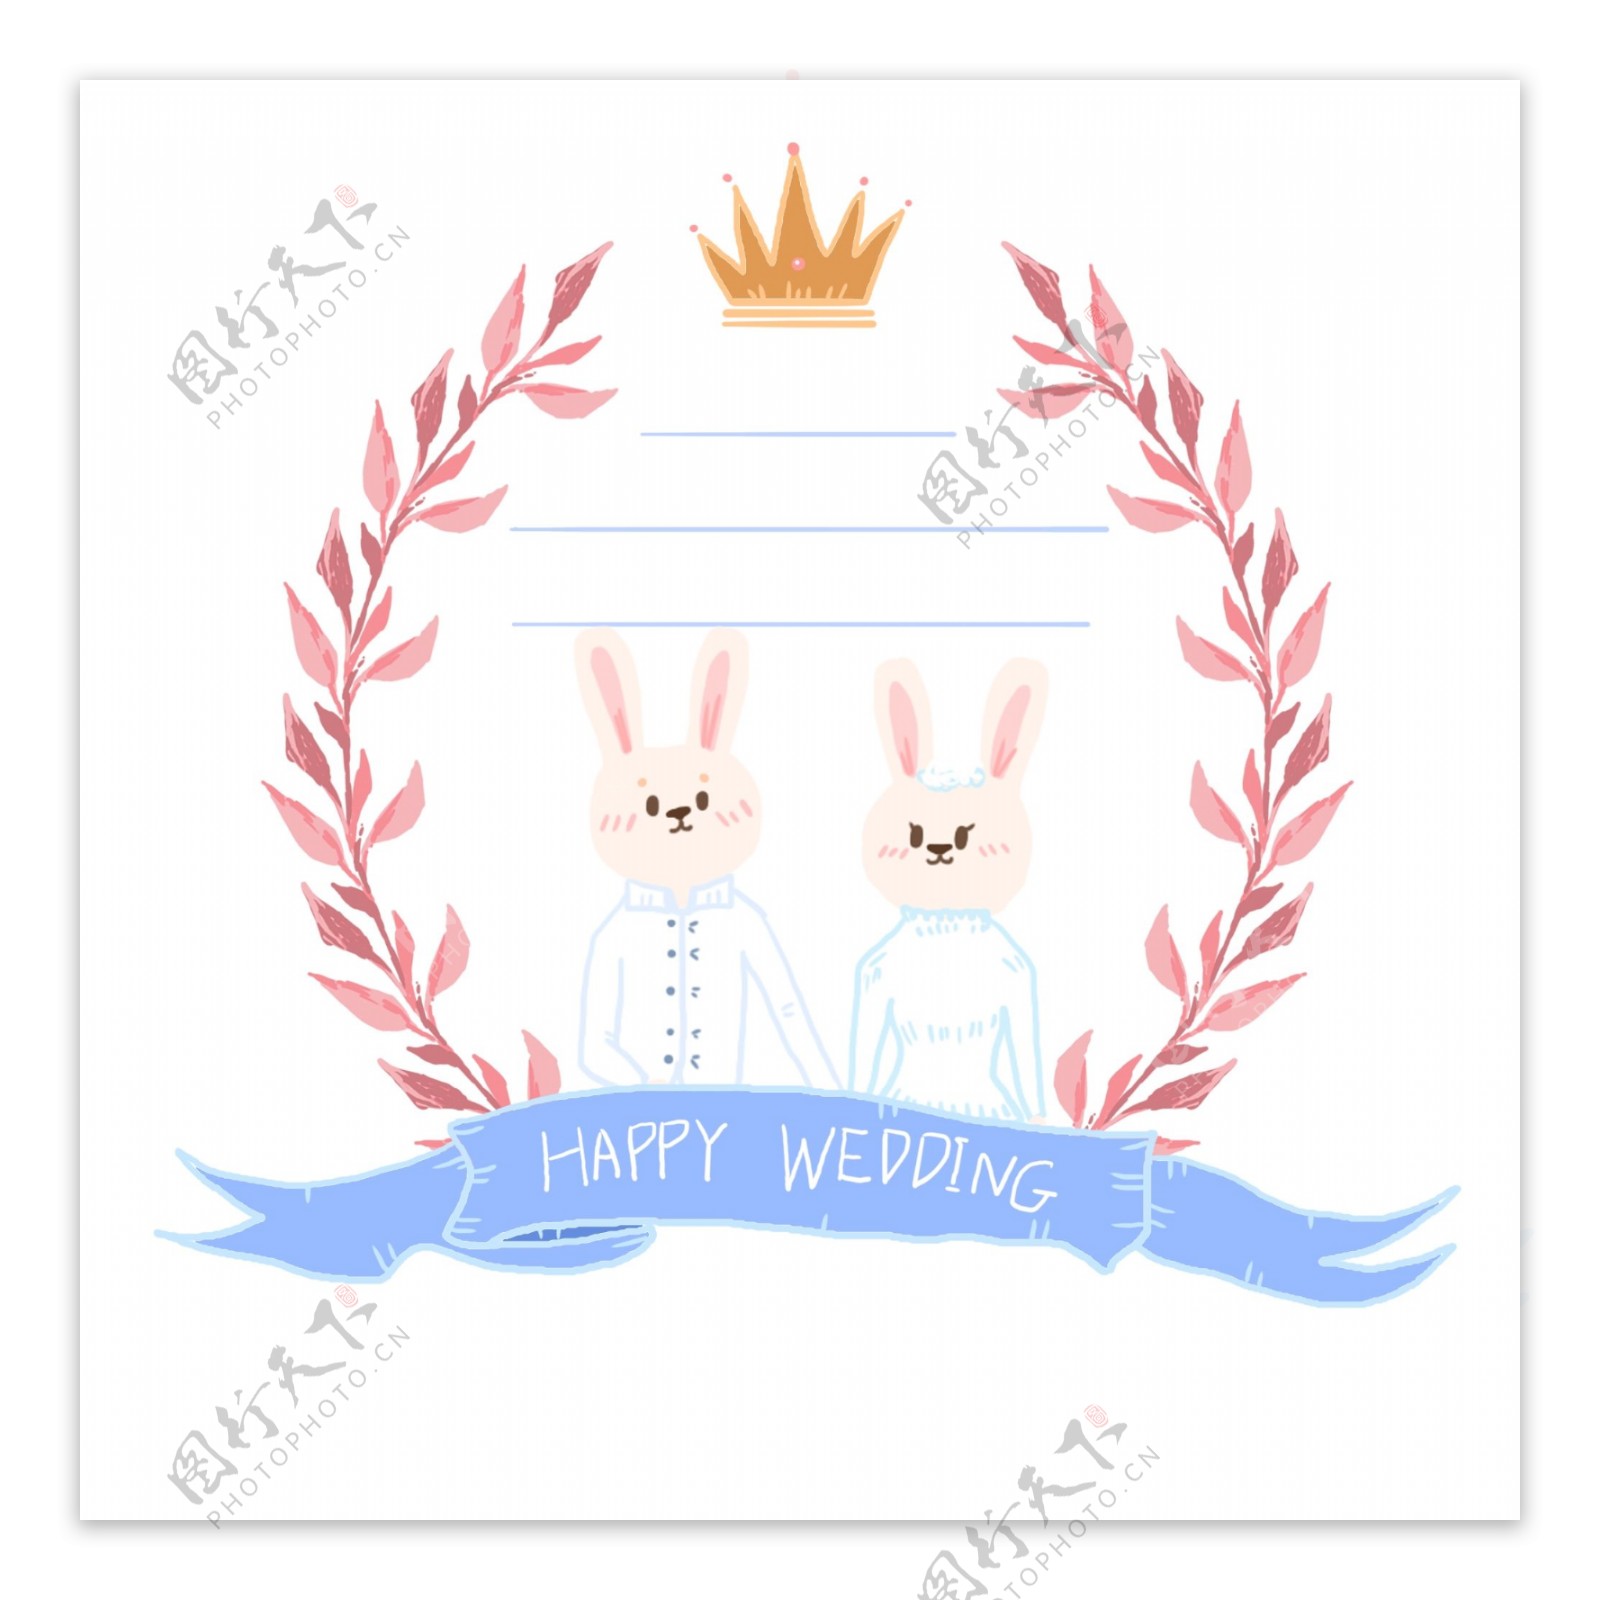 手绘结婚婚礼兔子叶子小清新边框设计元素